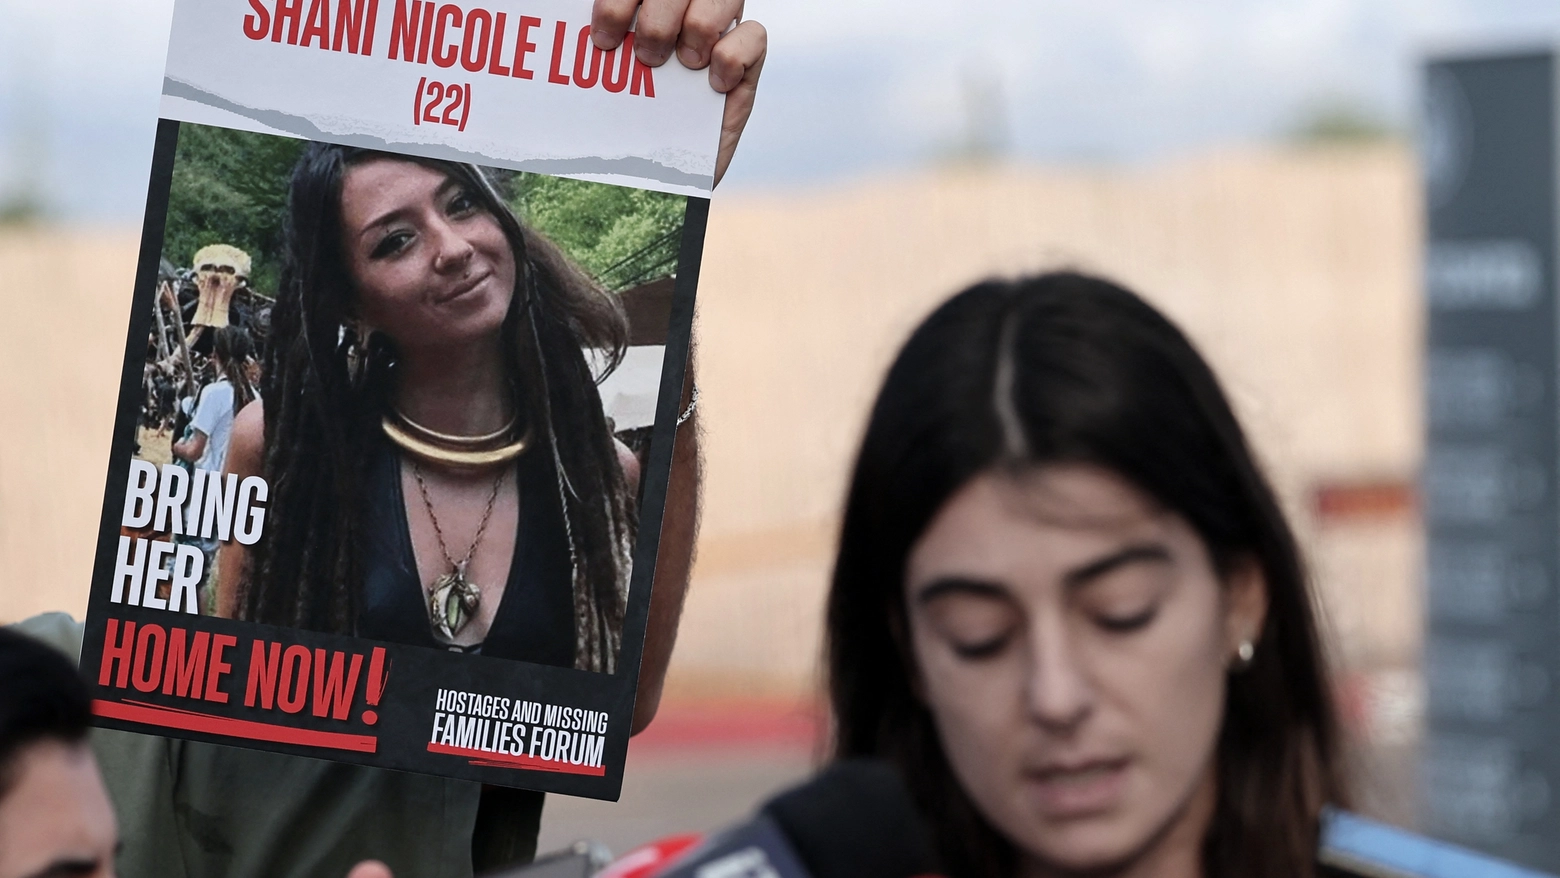 Nel manifesto una foto di Shani Nicole Louk, 22 anni, sequestrata il 7 ottobre da Hamas e uccisa (Afp)